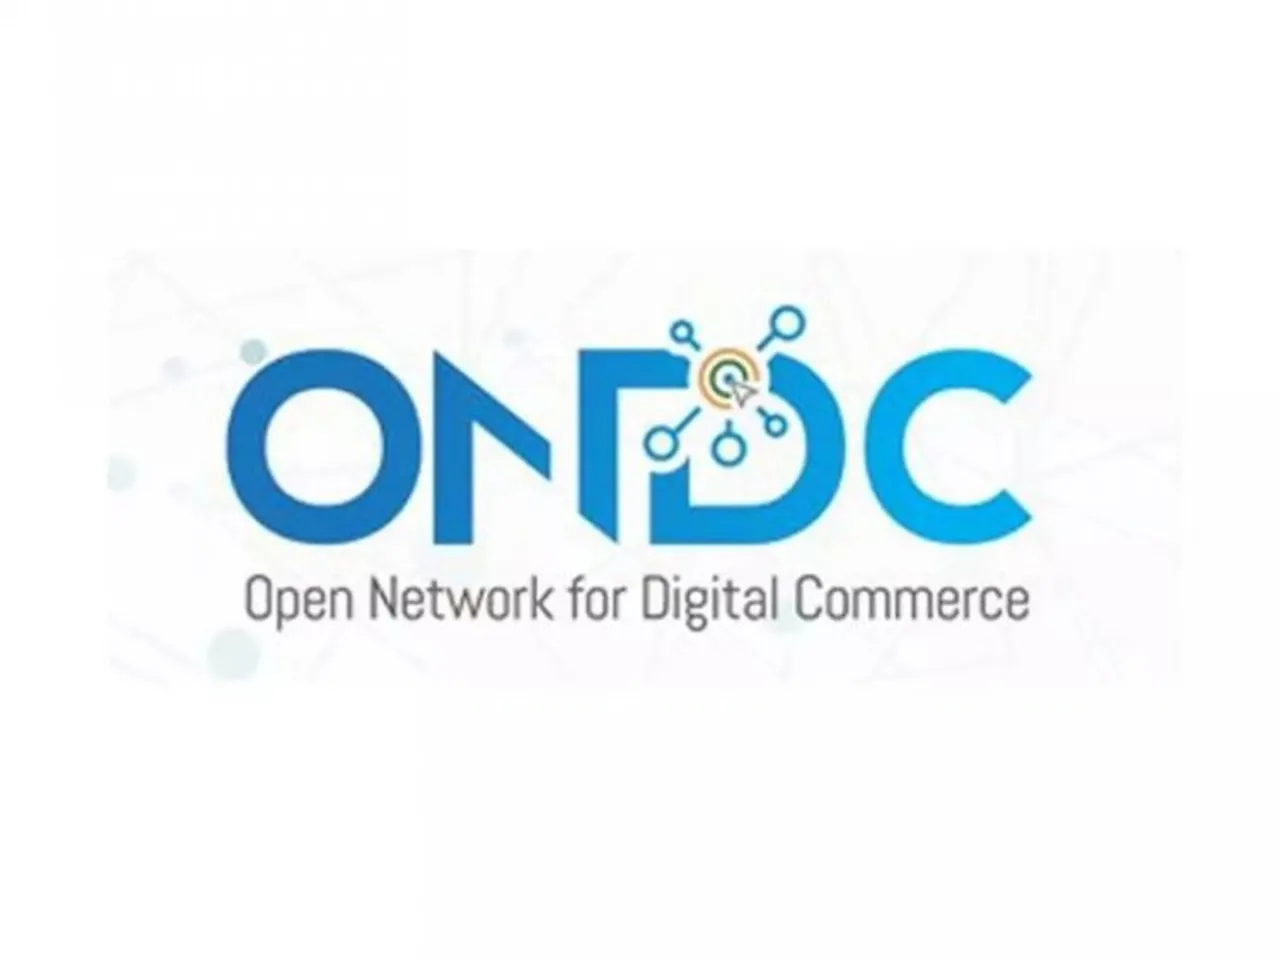 Open Network for Digital Commerce logo